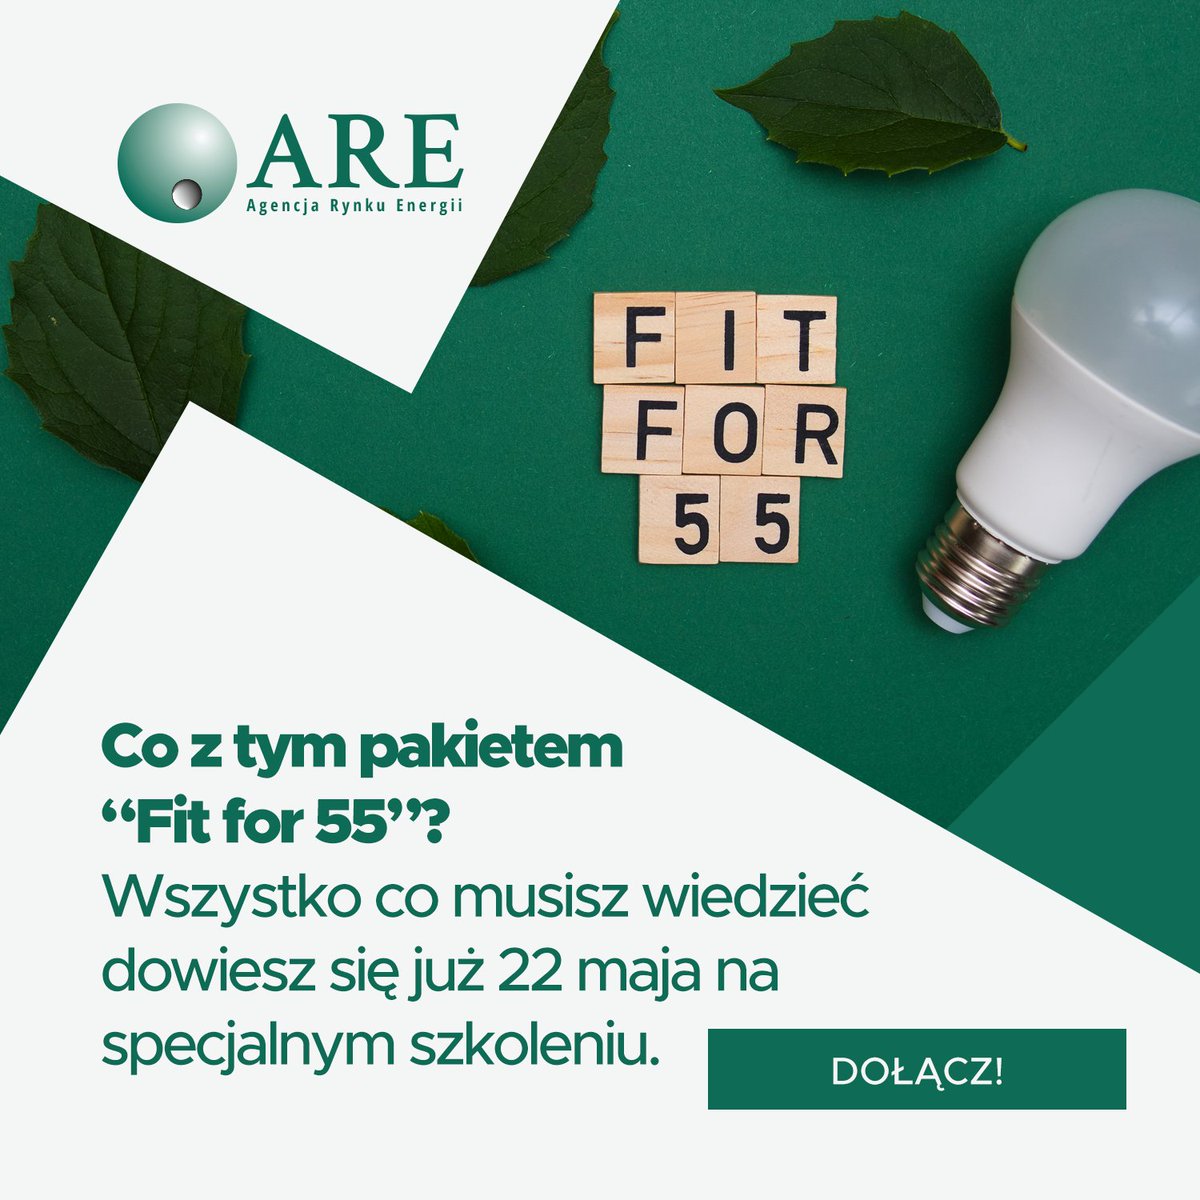 Transformacja energetyczna Polski a #Fitfor55 ❗ Już 22 maja zapraszamy na szkolenie on-line wszystkich zajmujących się komunikacją zewnętrzną, PR-em i marketingiem. Dowiesz się ciekawych rzeczy ⤵ 
are.waw.pl/szkolenia/wyzw…
#transformacja #energetyka #ARE